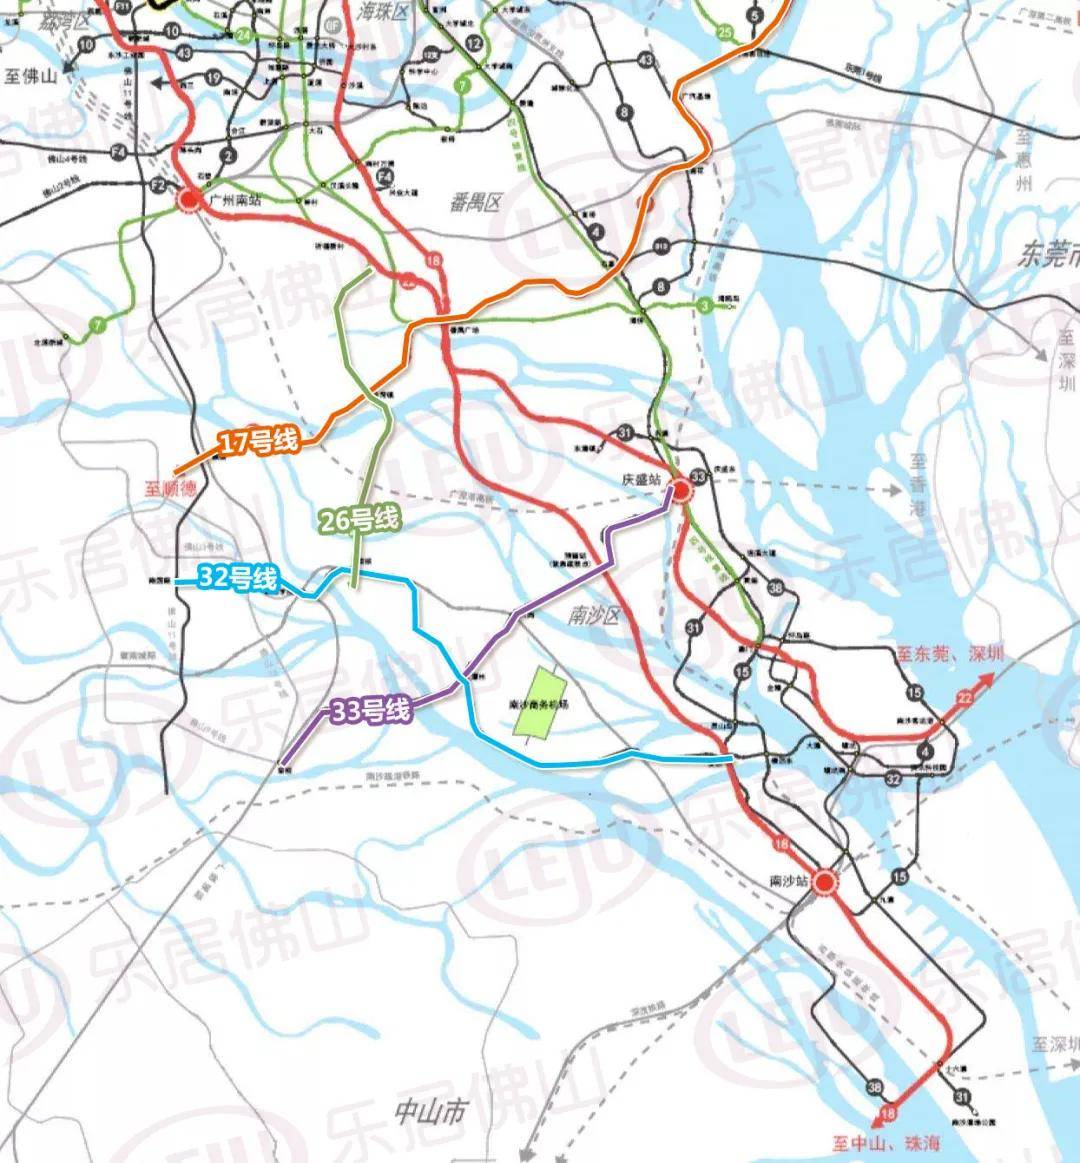 据介绍,佛山地铁14号线为 远期规划线路,在北滘镇范围内为东西走向